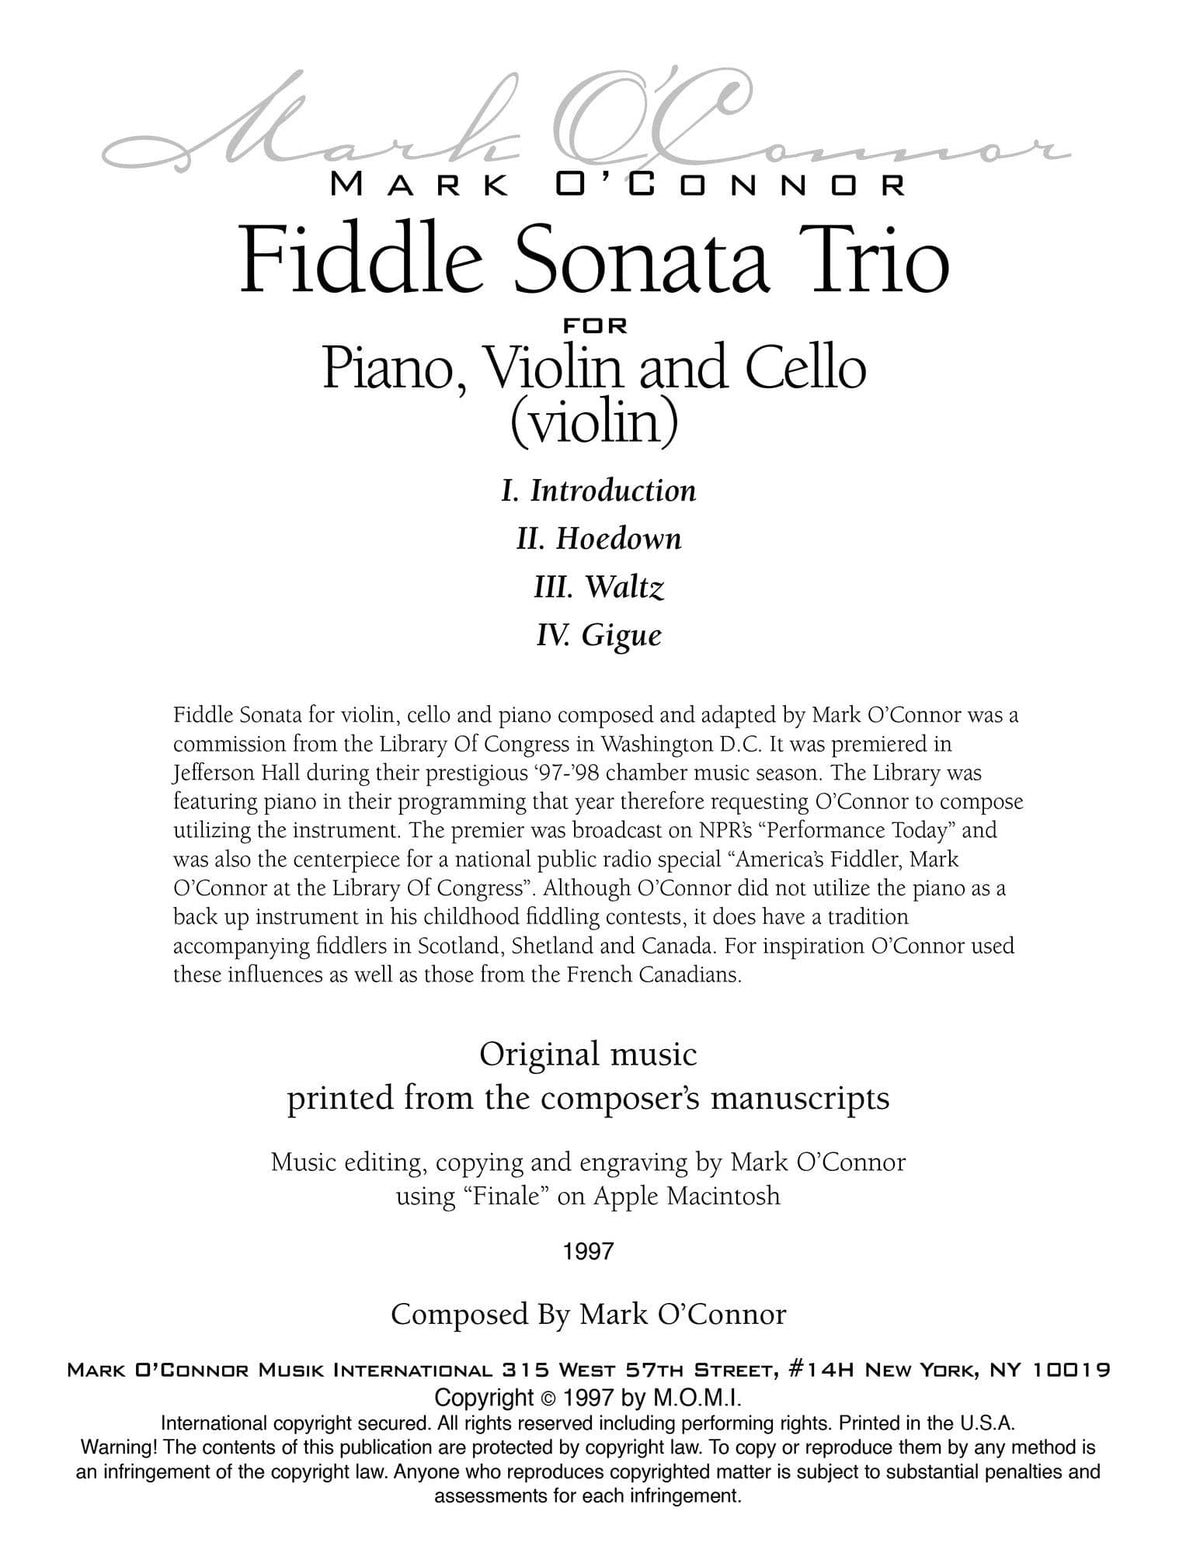 O'Connor, Mark - Fiddle Sonata Trio for Piano, Violin, and Cello - Violin - Digital Download